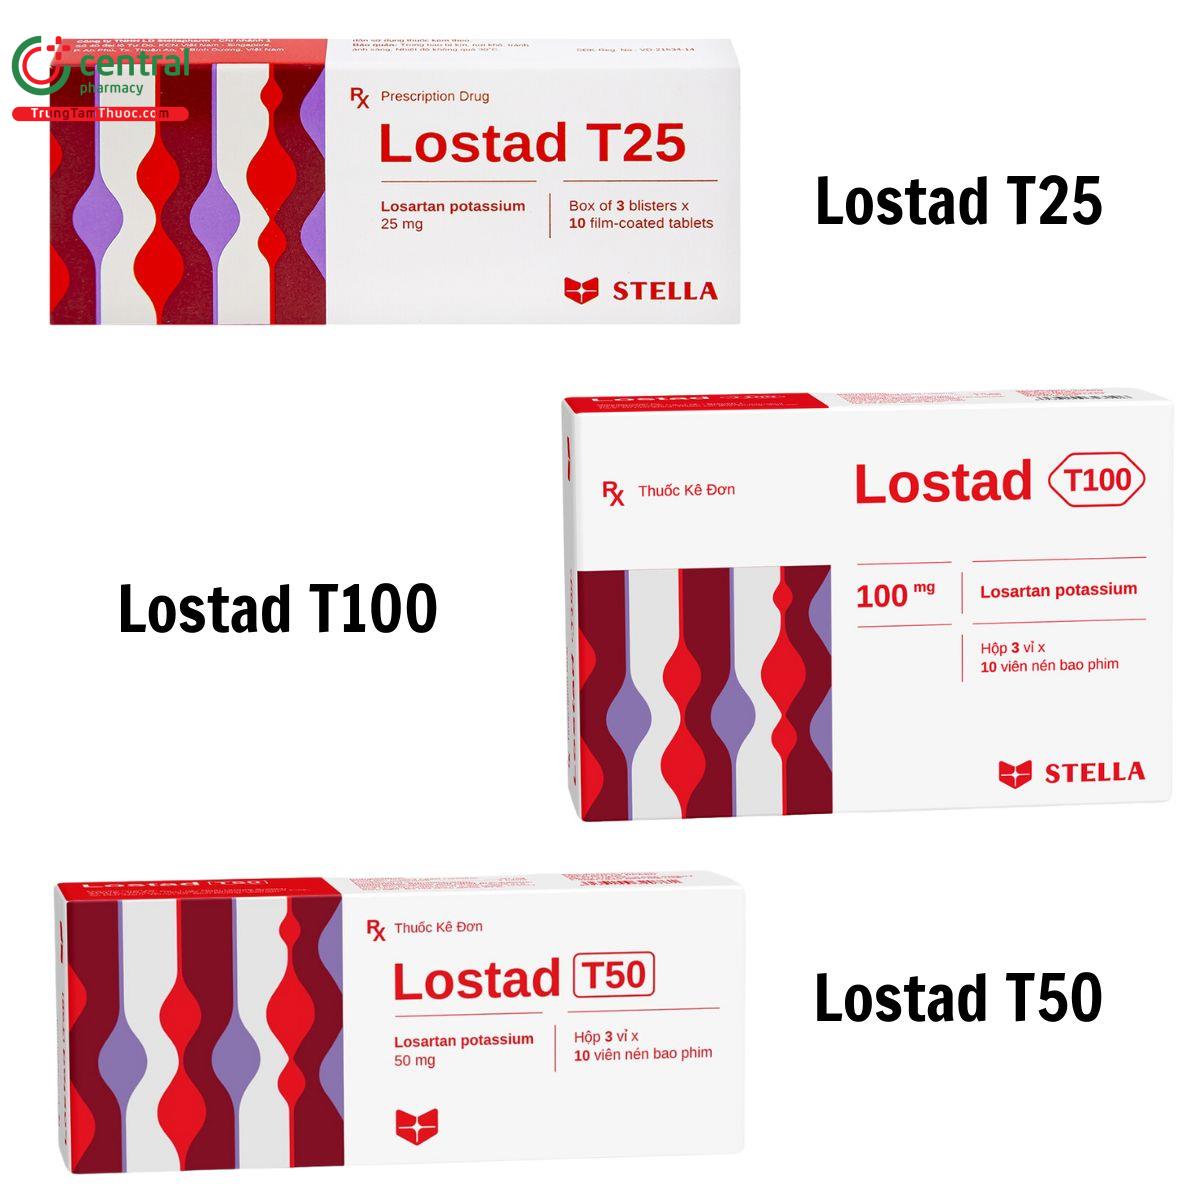 thuốc Lostad T100, thuốc Lostad T50 và thuốc Lostad T25